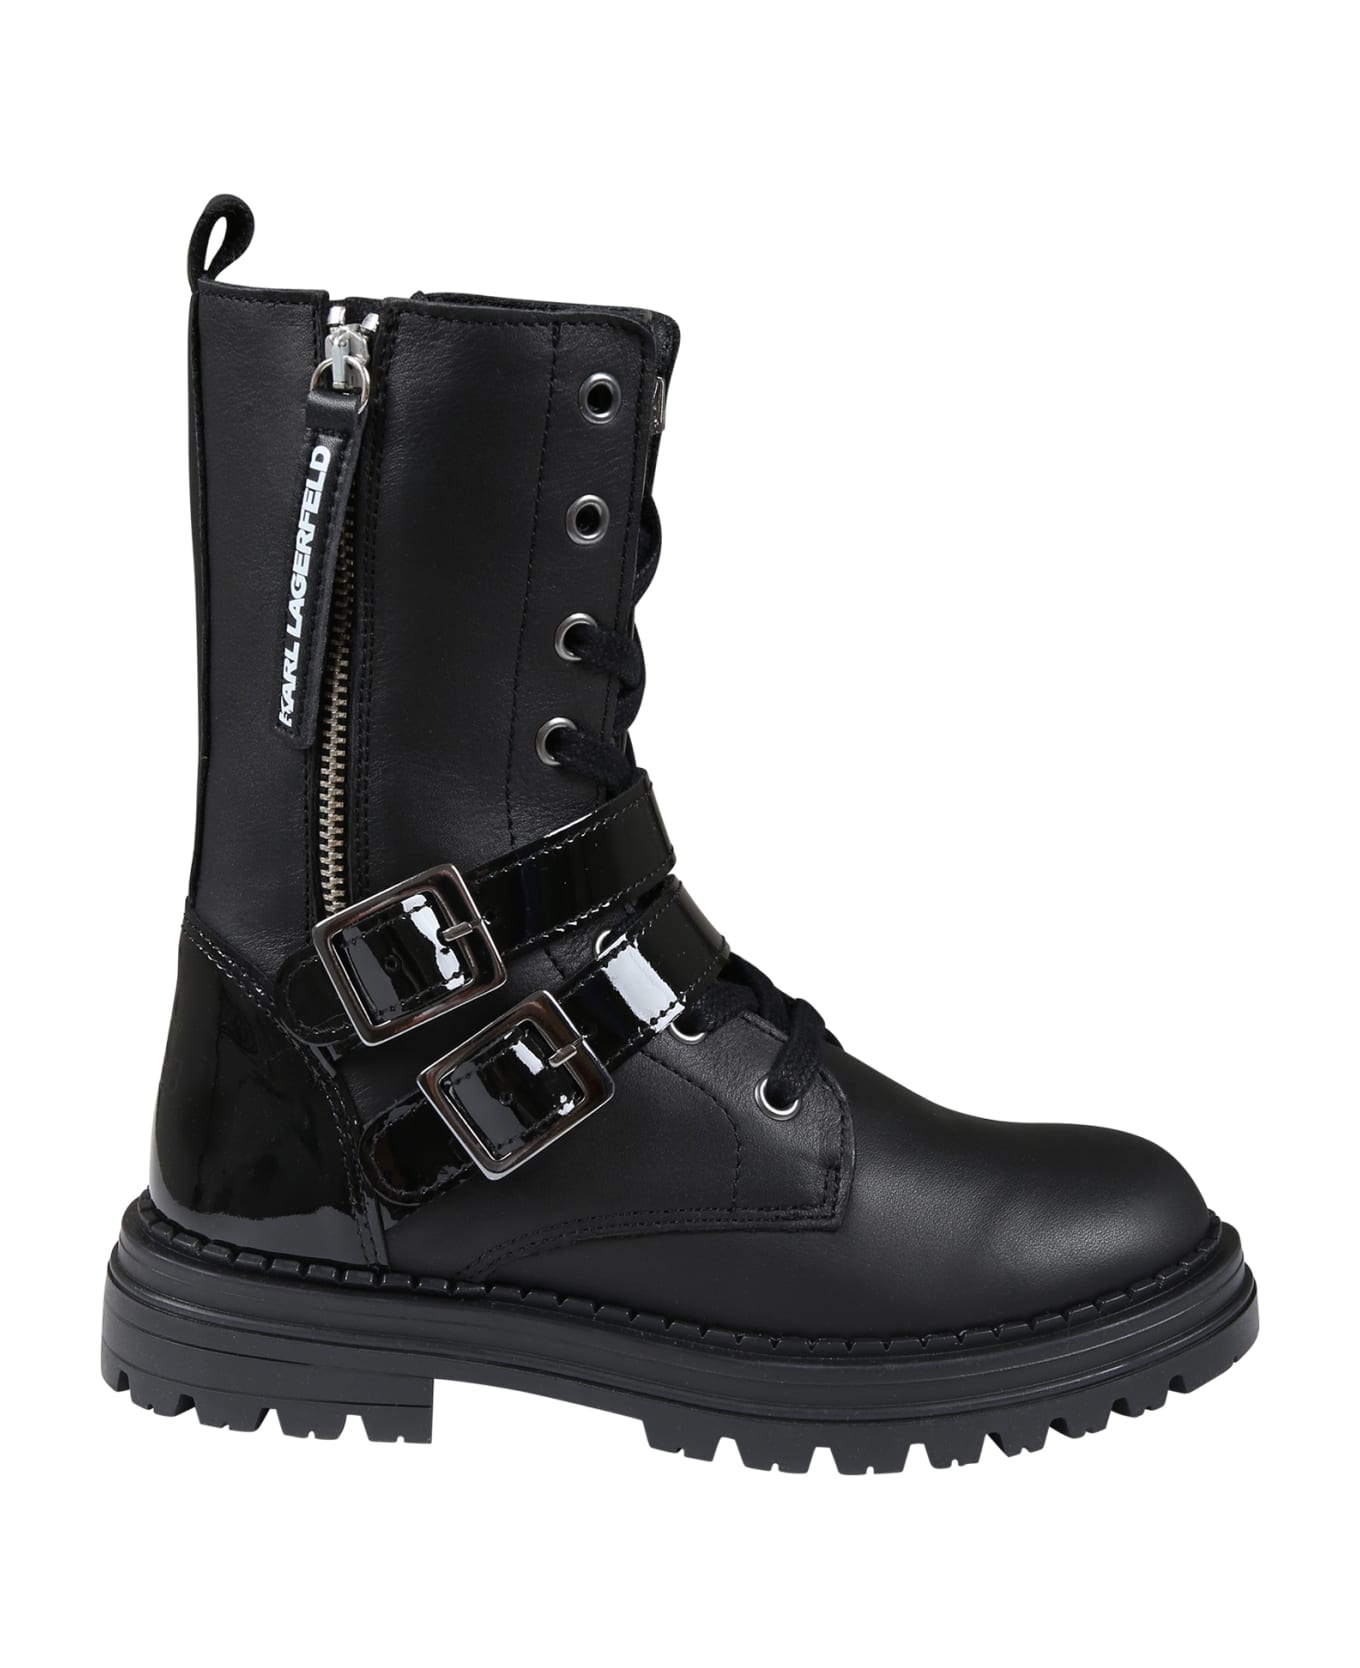 Karl Lagerfeld Kids Black Boots For Girl - Black